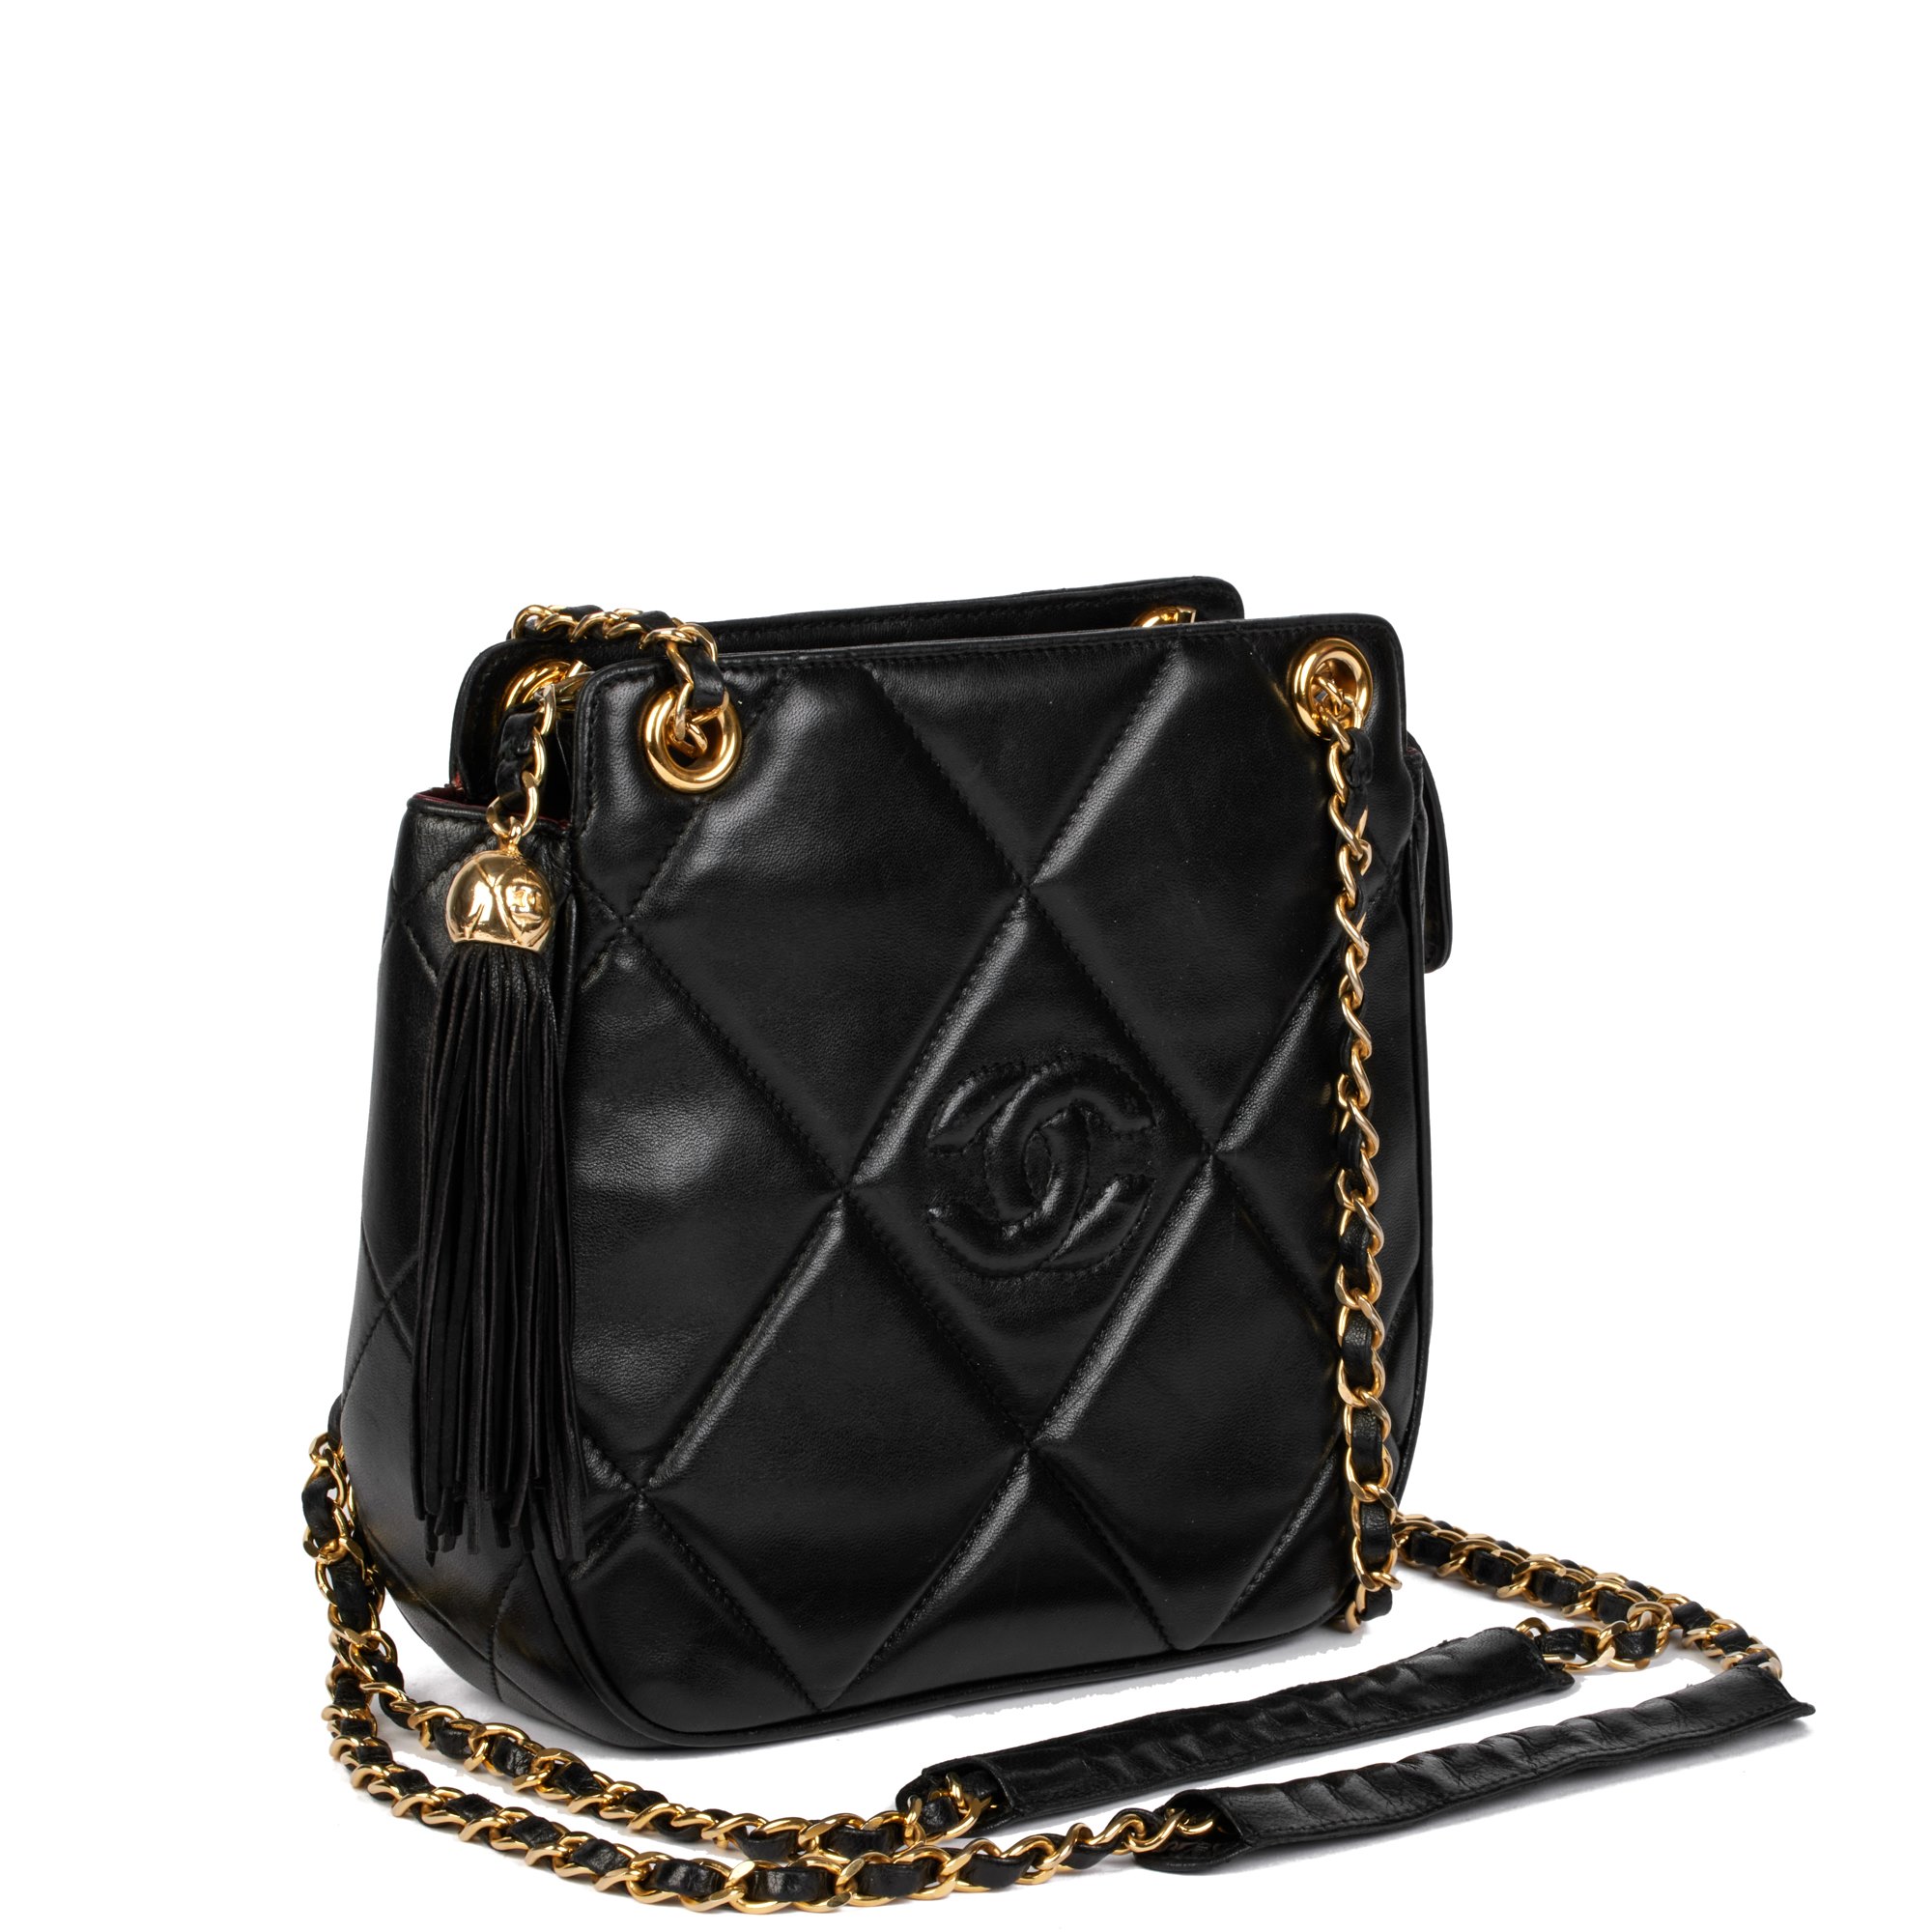 Chanel Black Quilted Lambskin Vintage Timeless Fringe Shoulder Bag